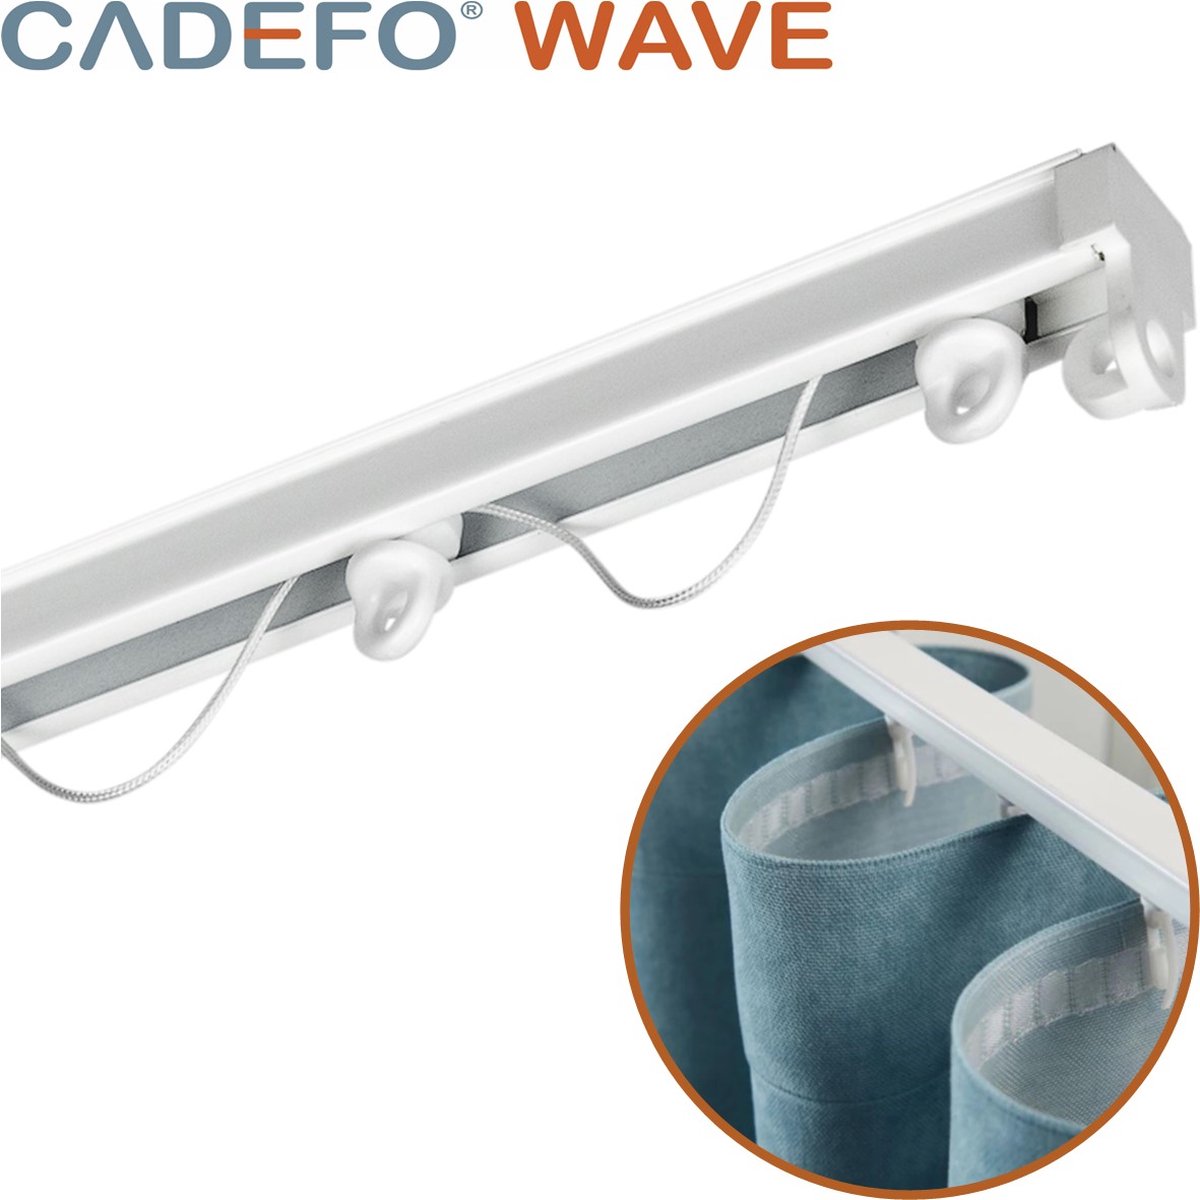 CADEFO WAVE (401 - 450 cm) Gordijnrails - Compleet op maat! - UIT 1 STUK - Leverbaar tot 6 meter - Plafondbevestiging - Lengte 421 cm